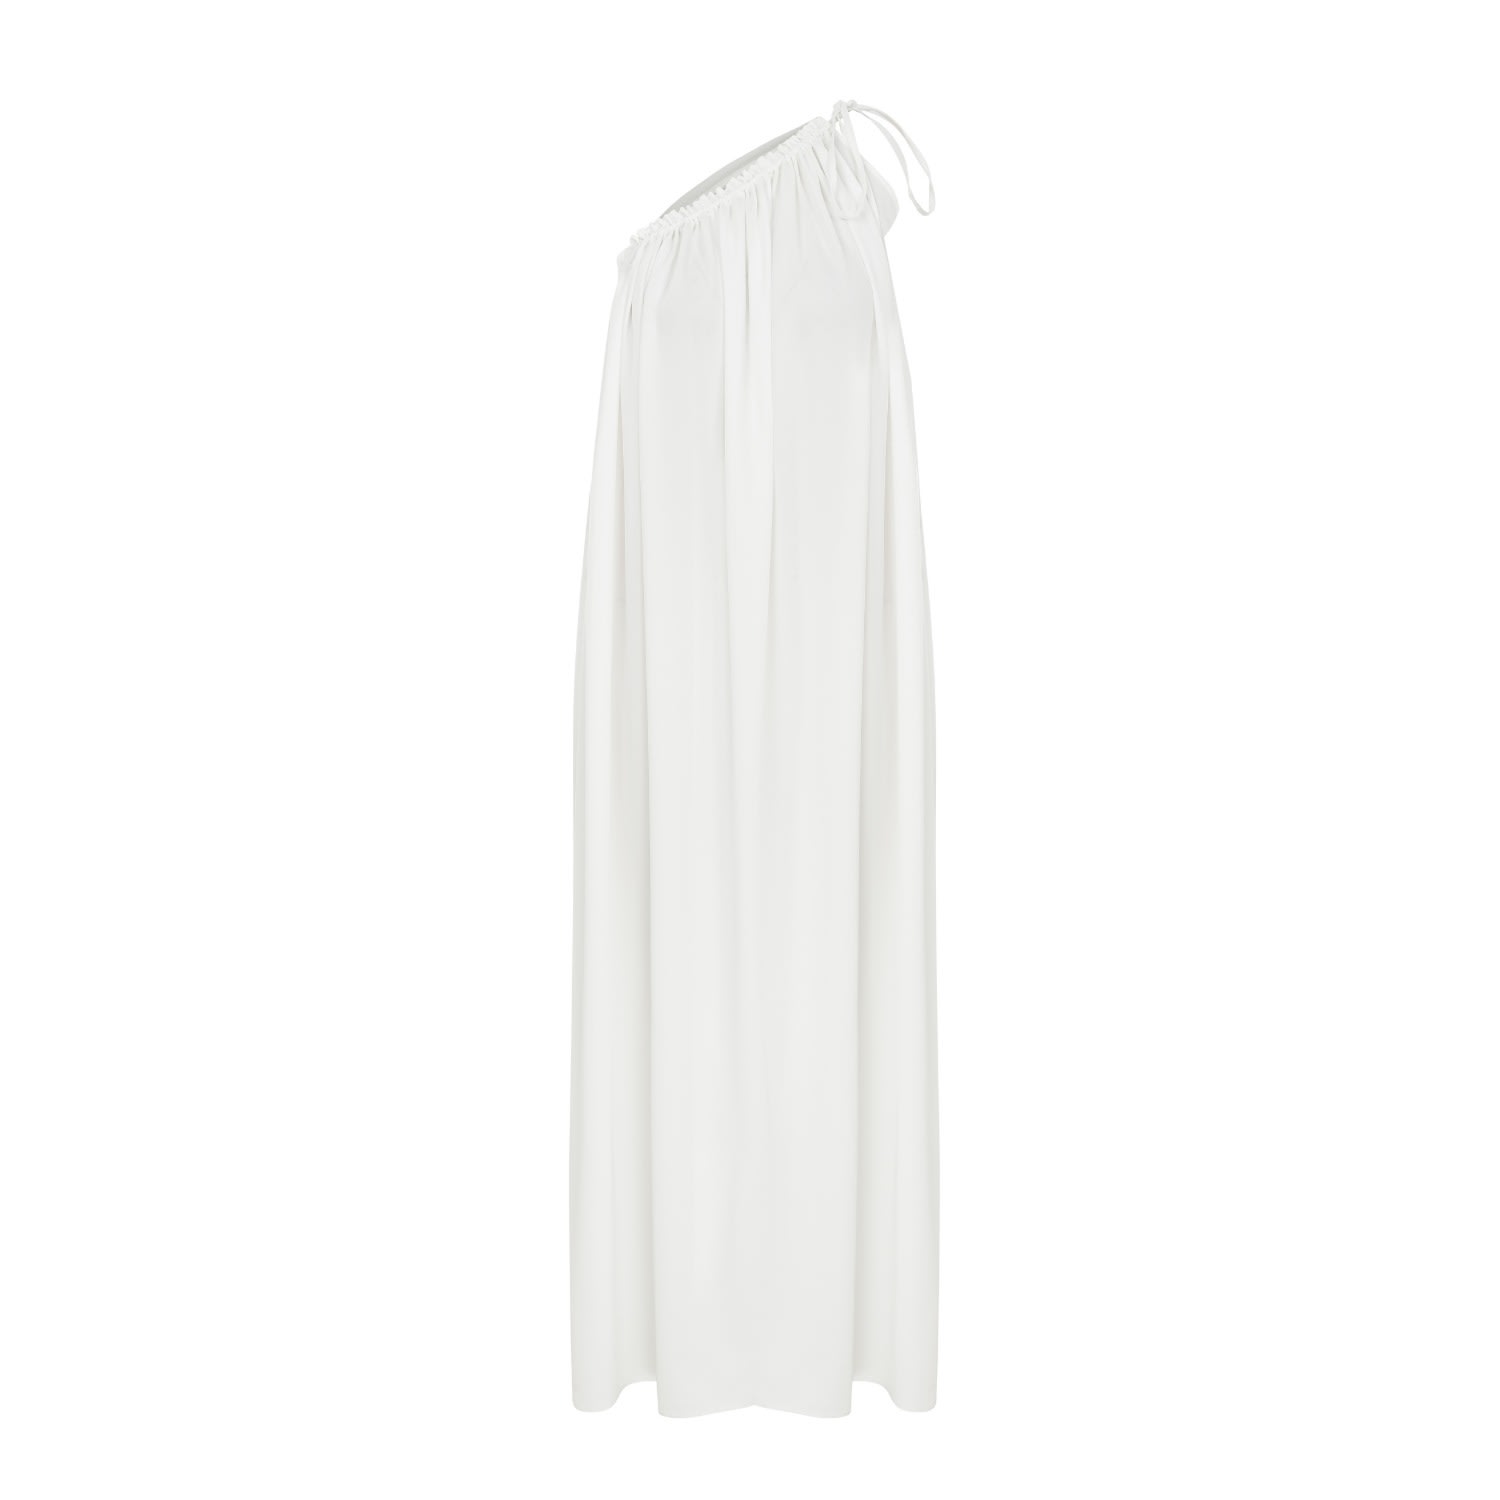 Nazli Ceren Women's White Chrissy One Shoulder Dress